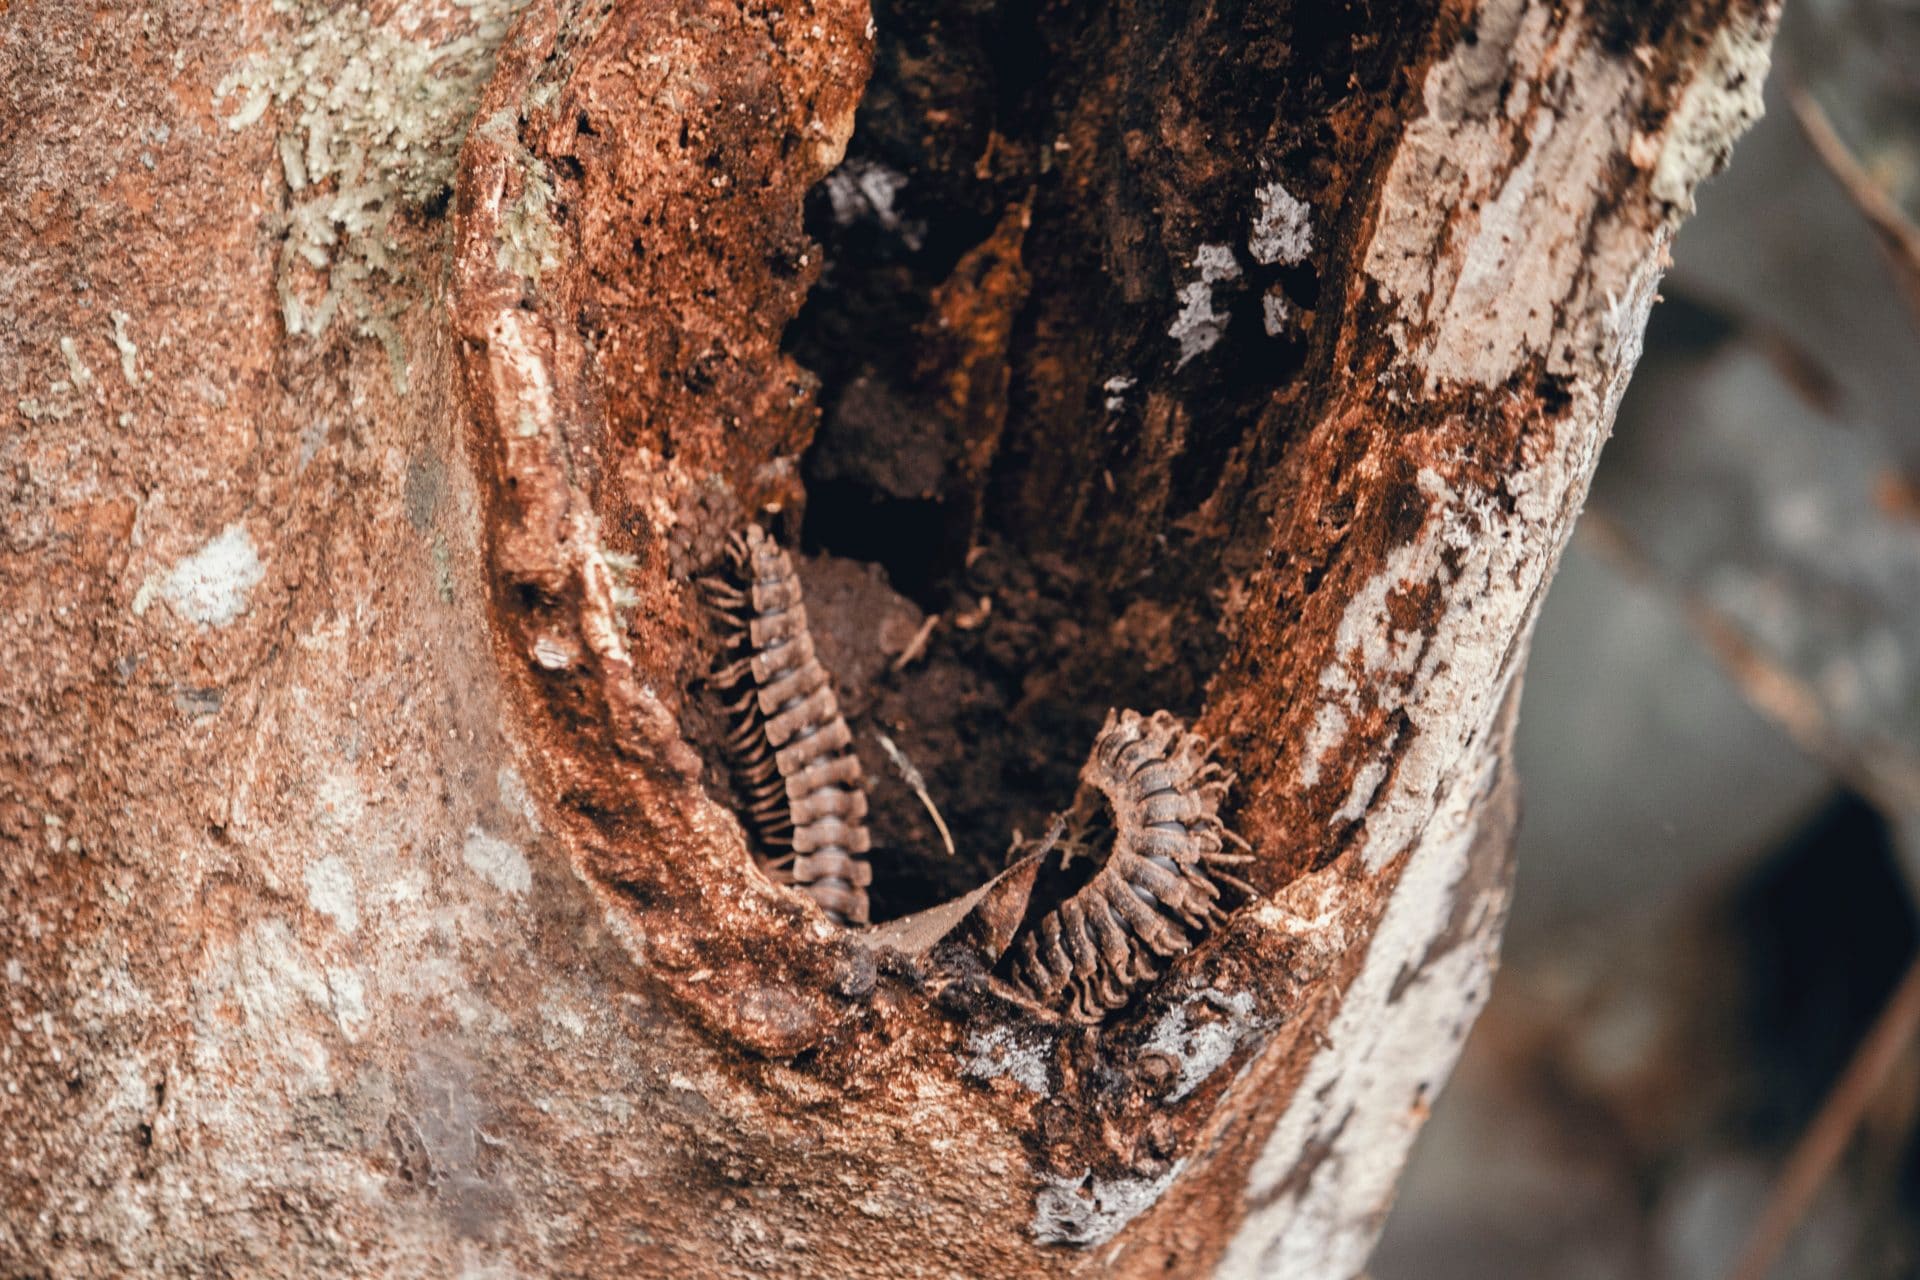 Centipede inside a tree